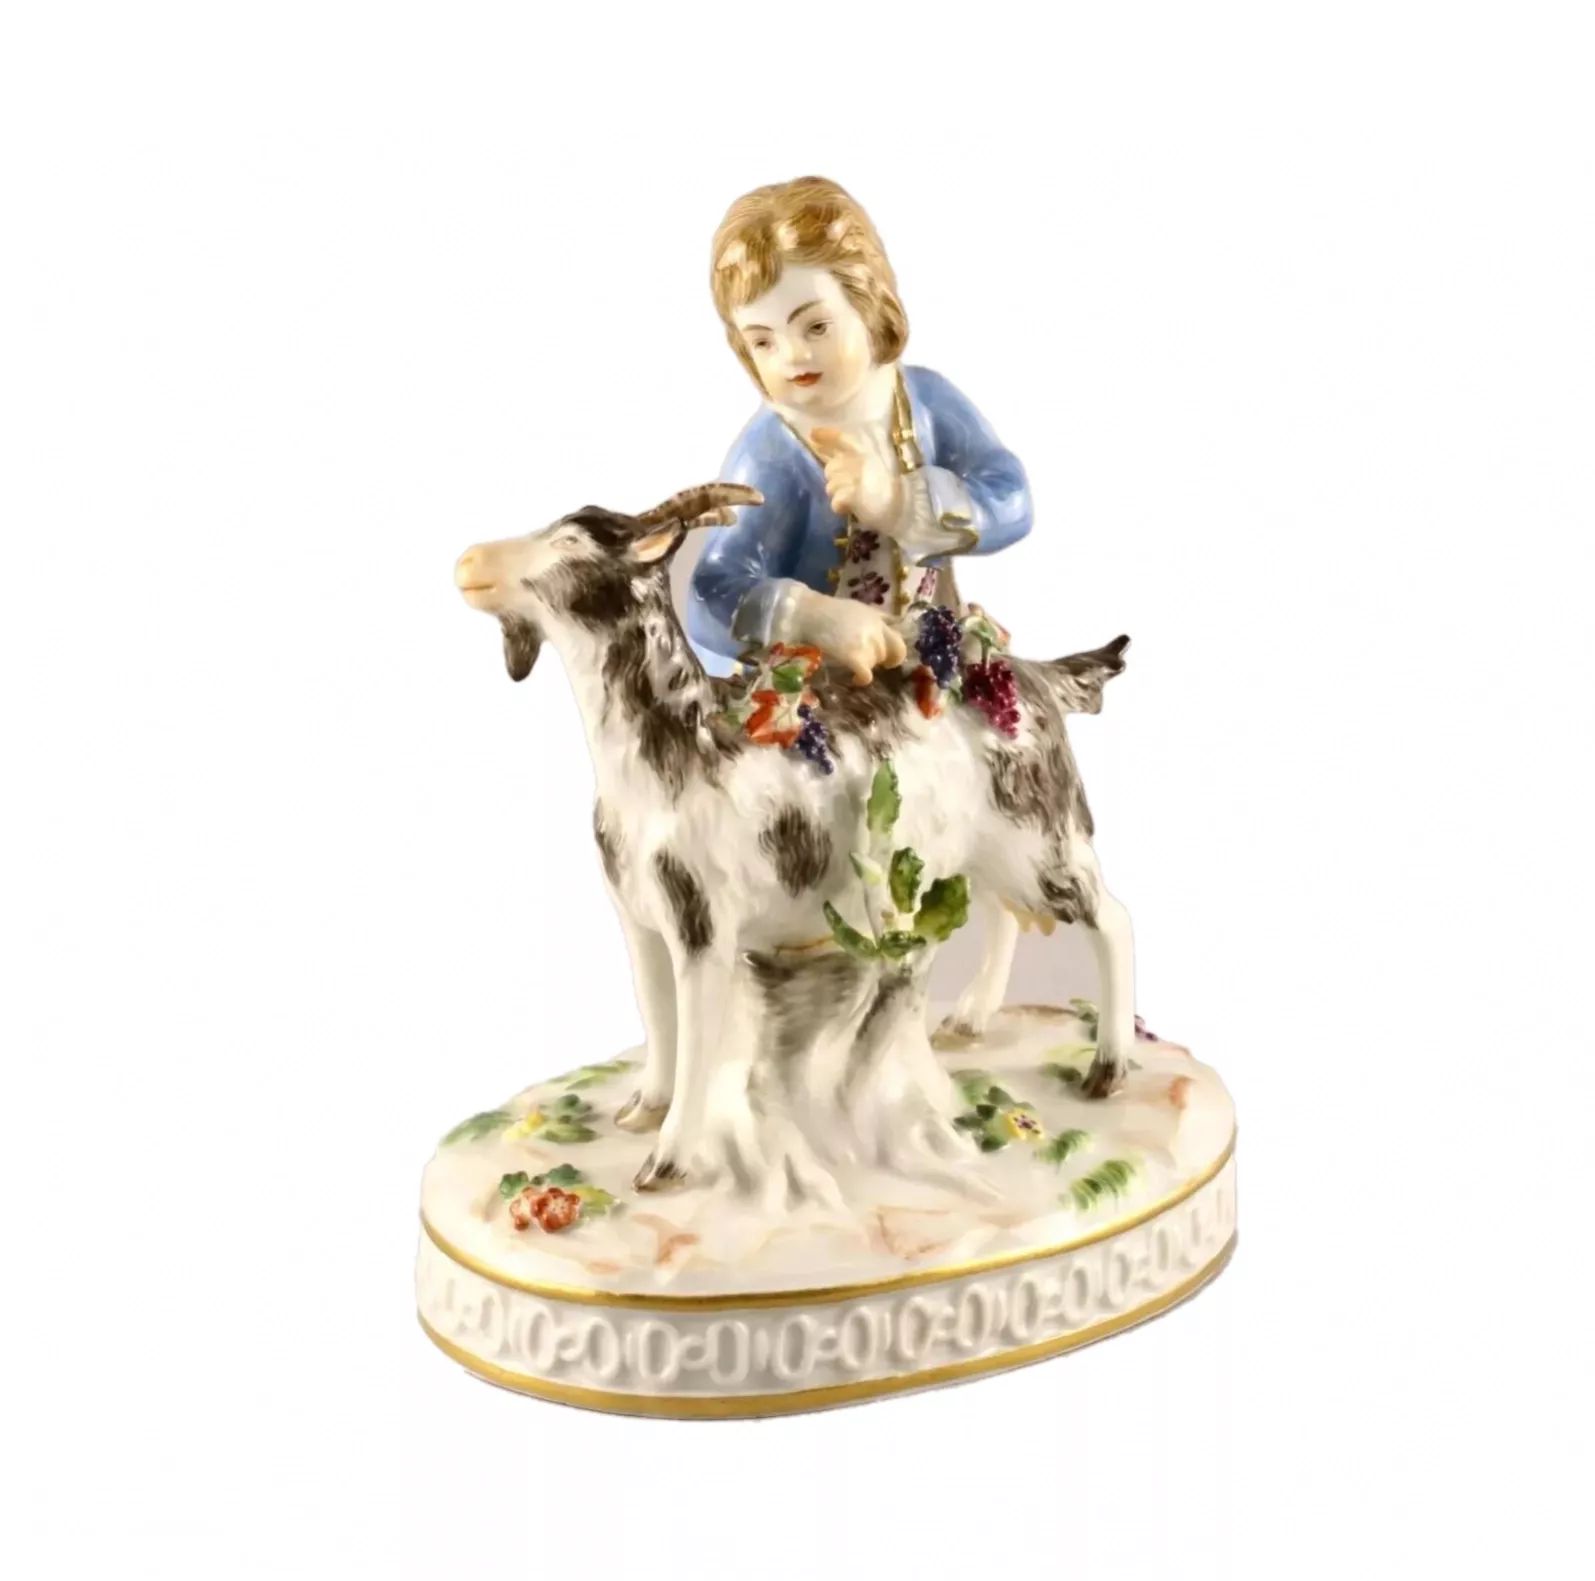 Porcelain-figure-Boy-with-a-goat-Meissen